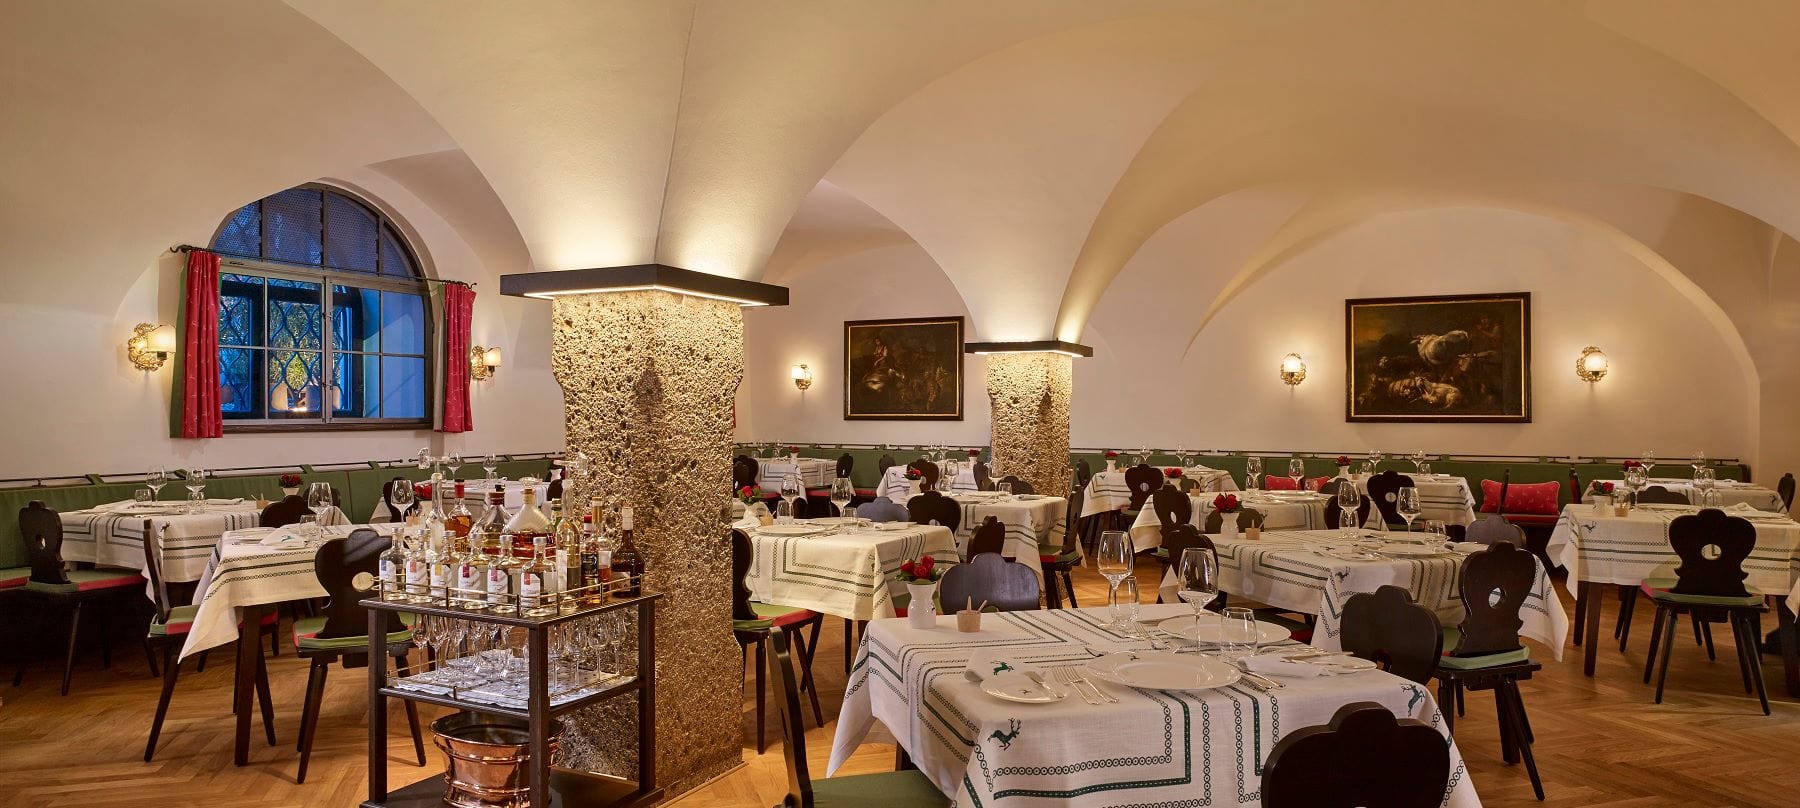 Restaurant Goldener Hirsch bei Salzburg schmeckt